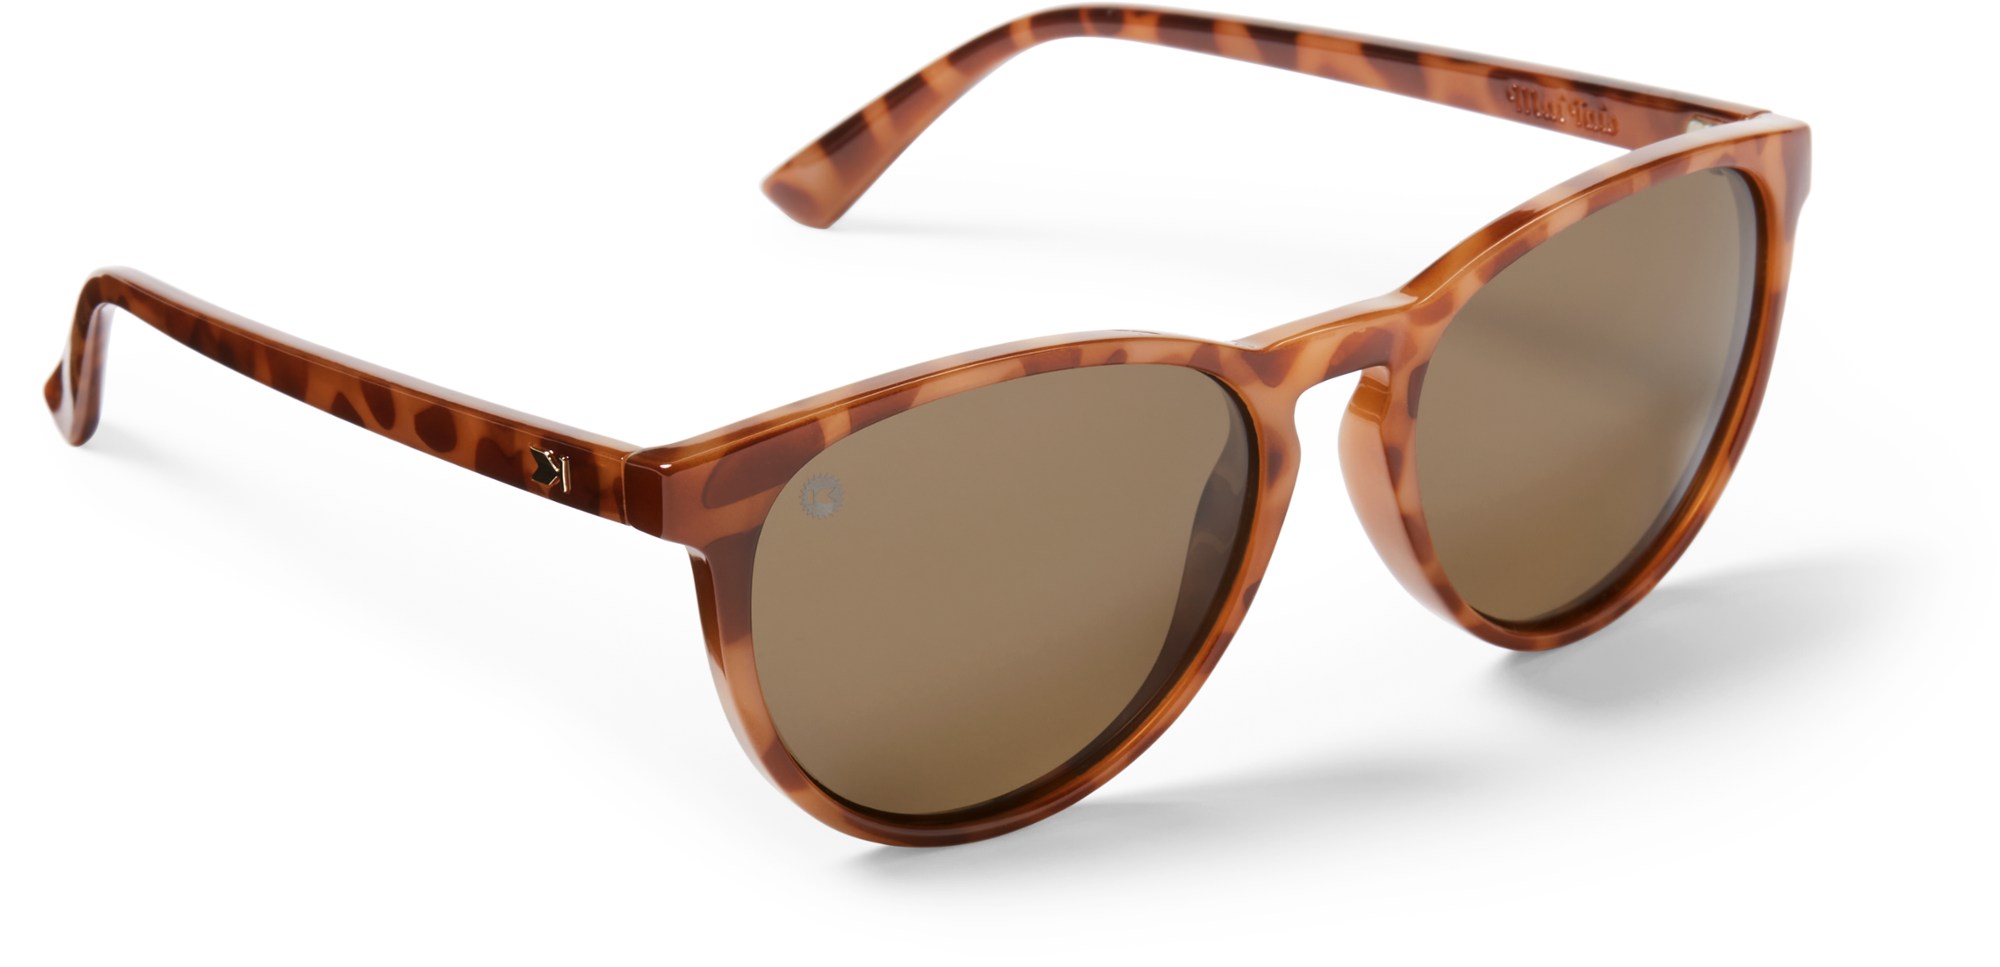 Поляризованные солнцезащитные очки Mai Tais Knockaround, коричневый